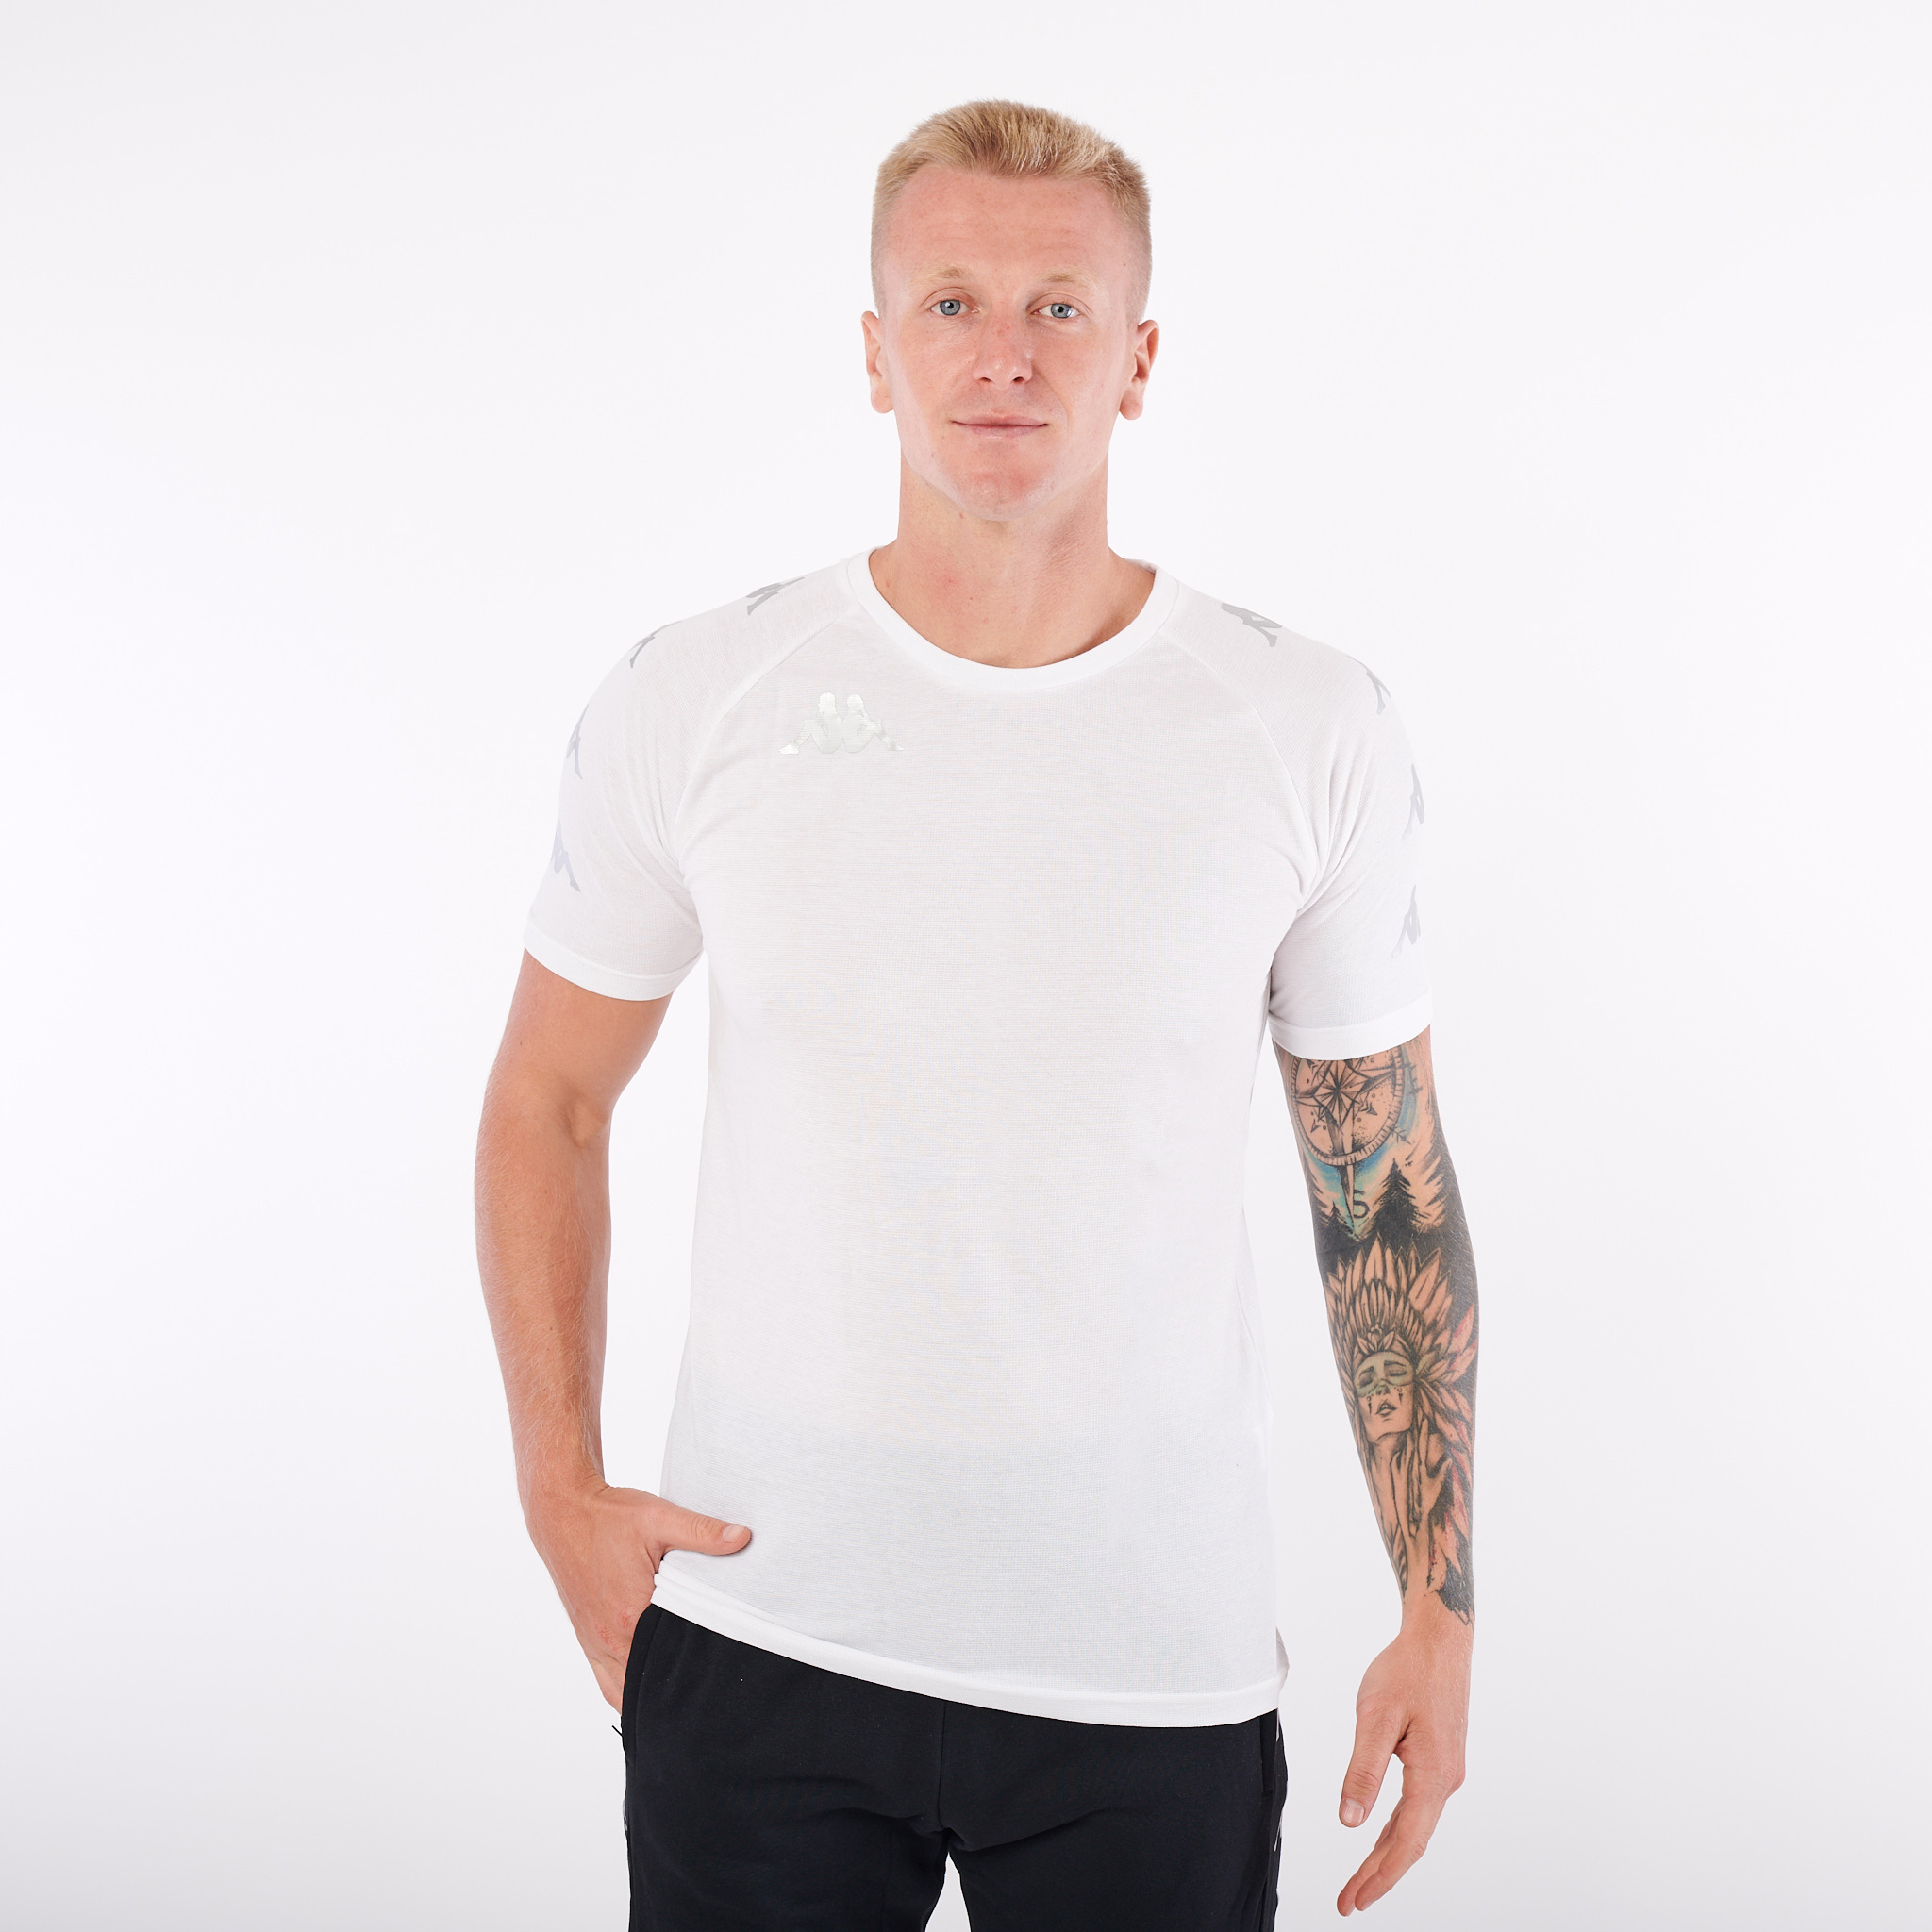 KAPPA4SOCCER ANCONE tričko bílá